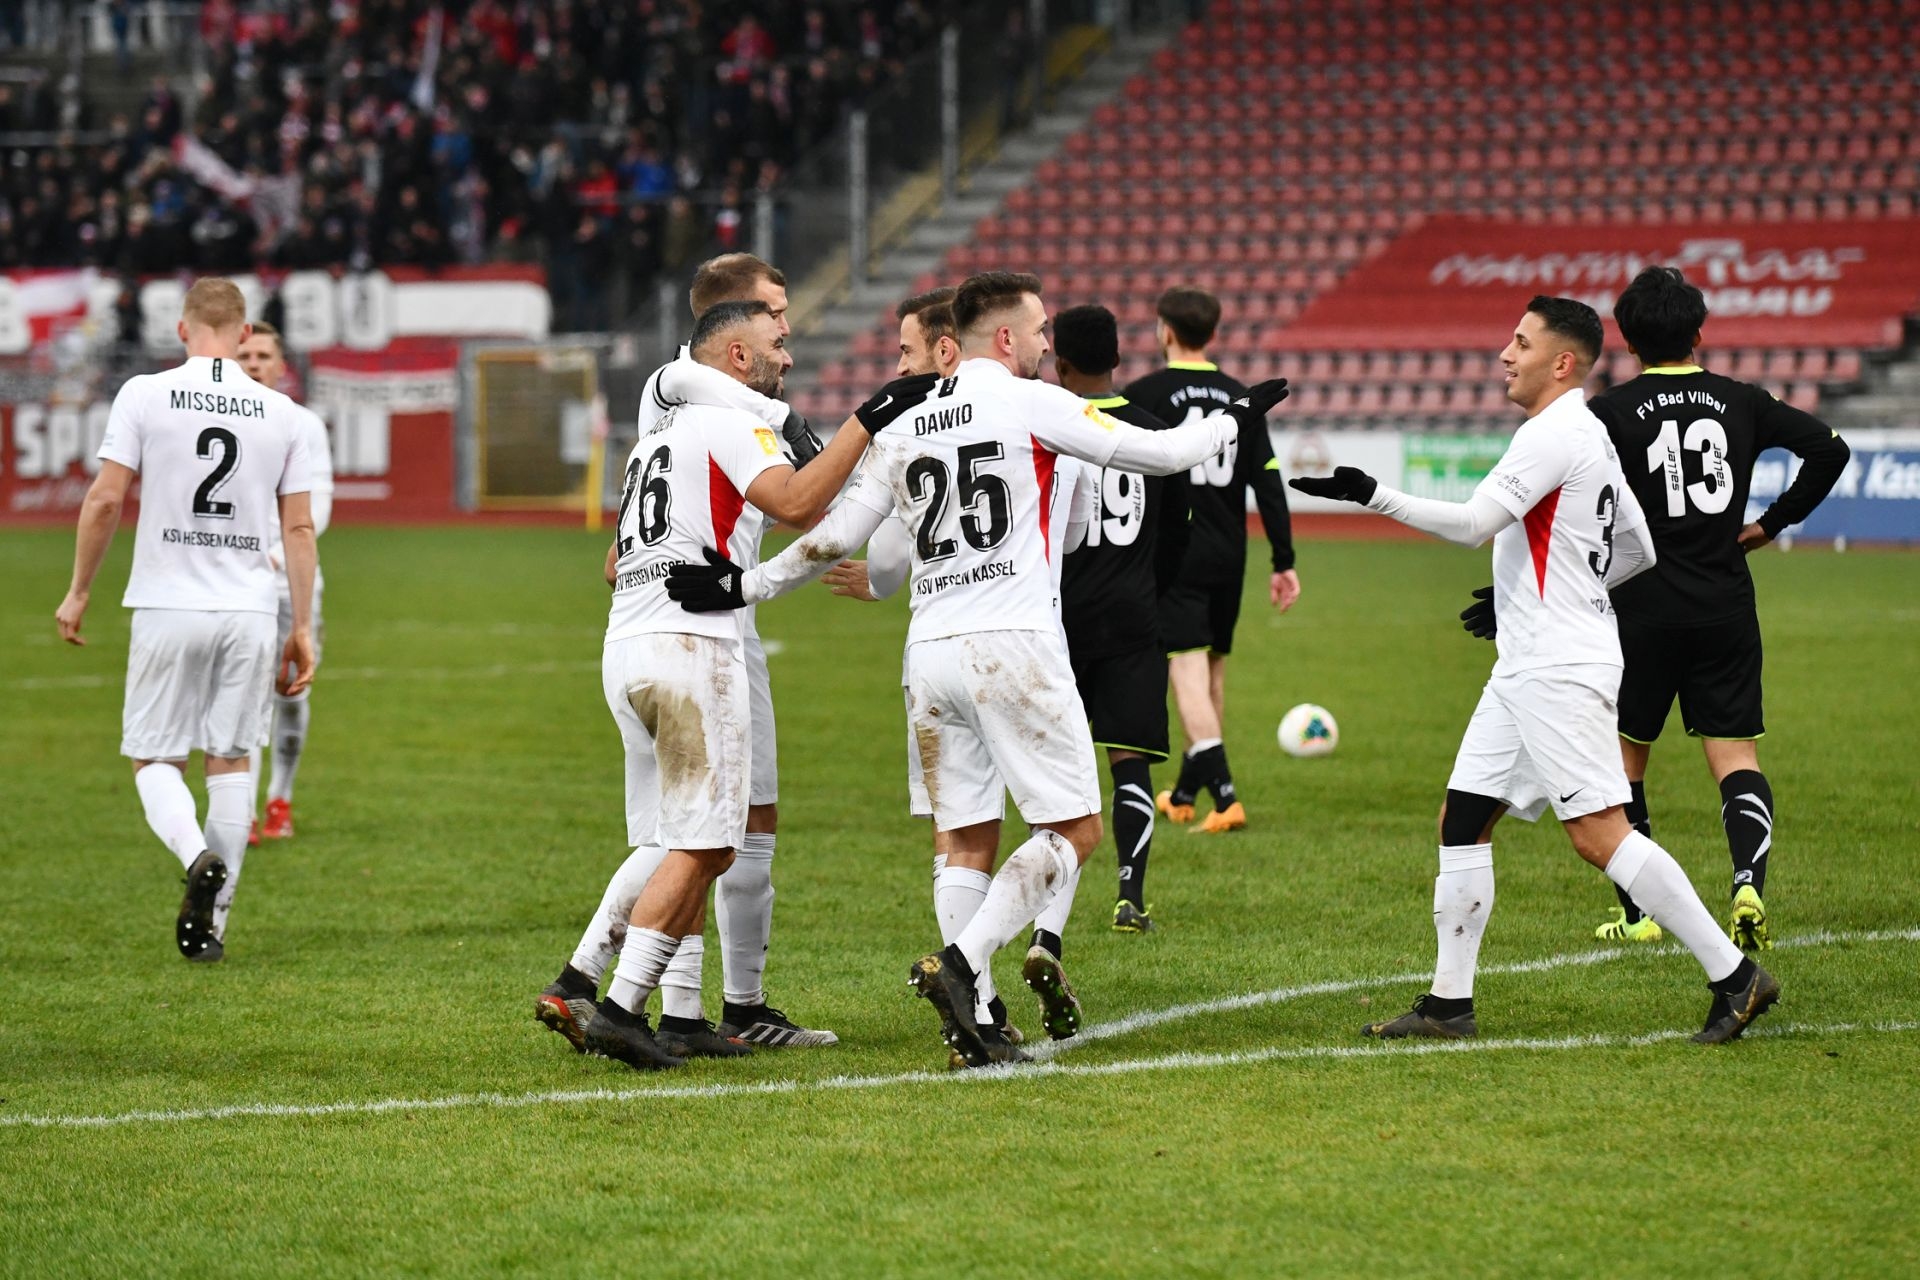 Lotto Hessenliga 2019/2020, KSV Hessen Kassel, FV Bad Vilbel, Endstand 6:1, Jubel zum 5:0